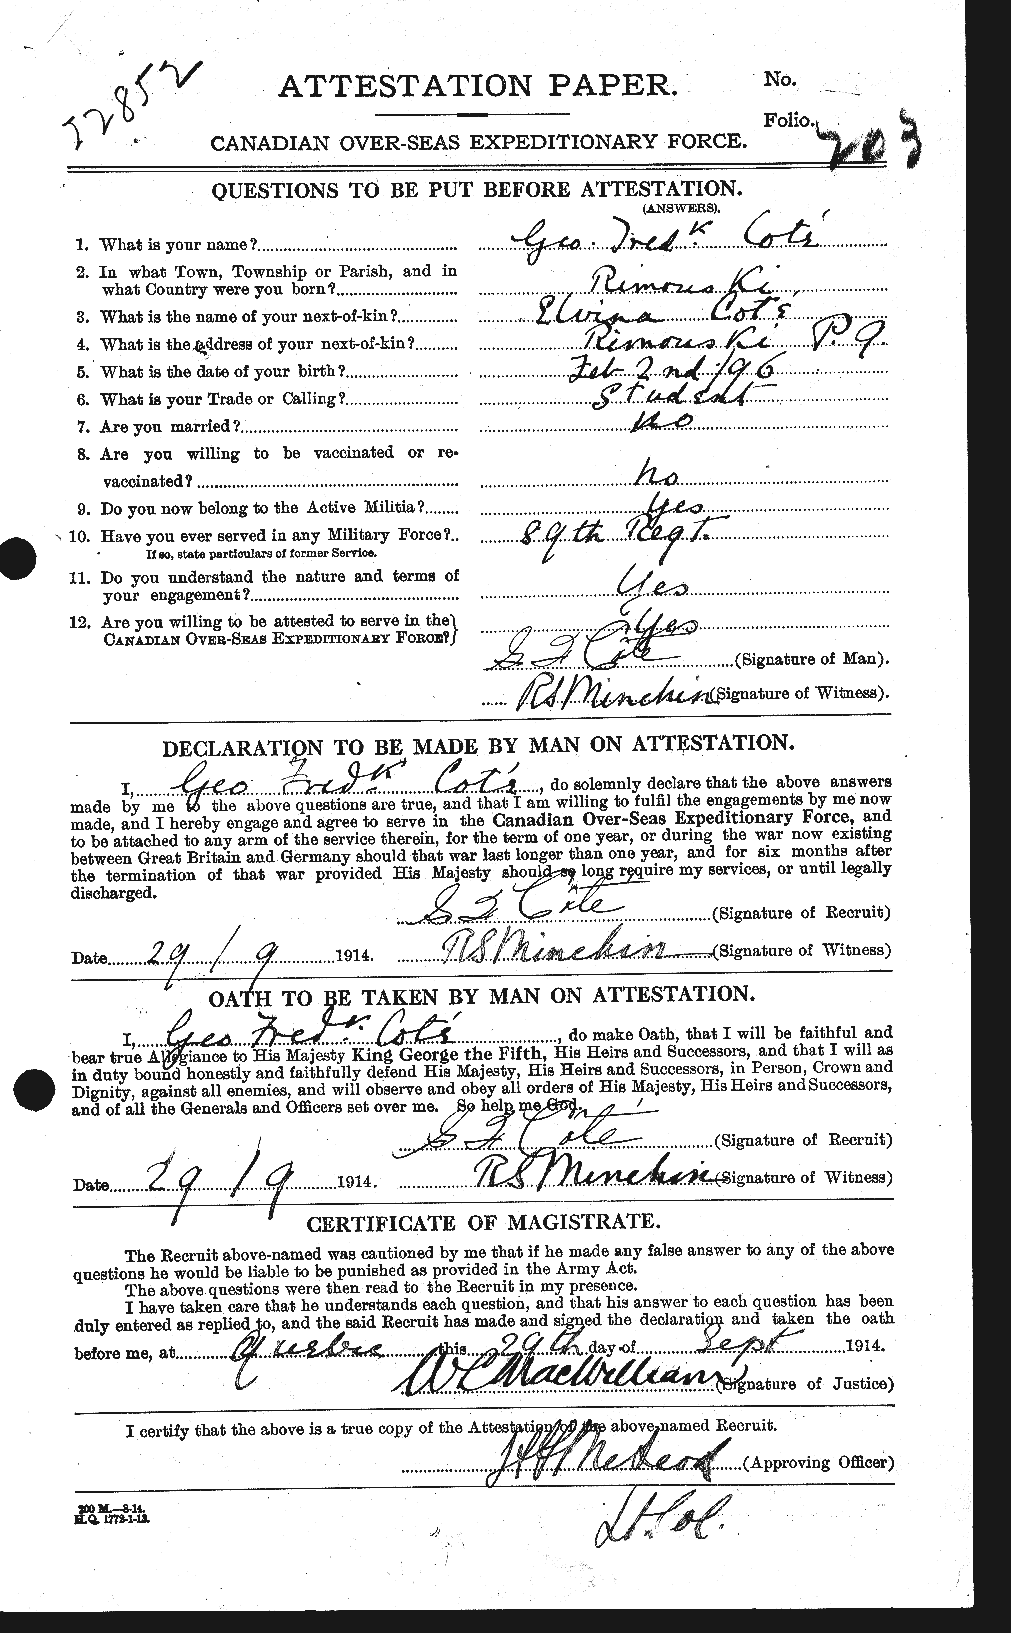 Dossiers du Personnel de la Première Guerre mondiale - CEC 058450a